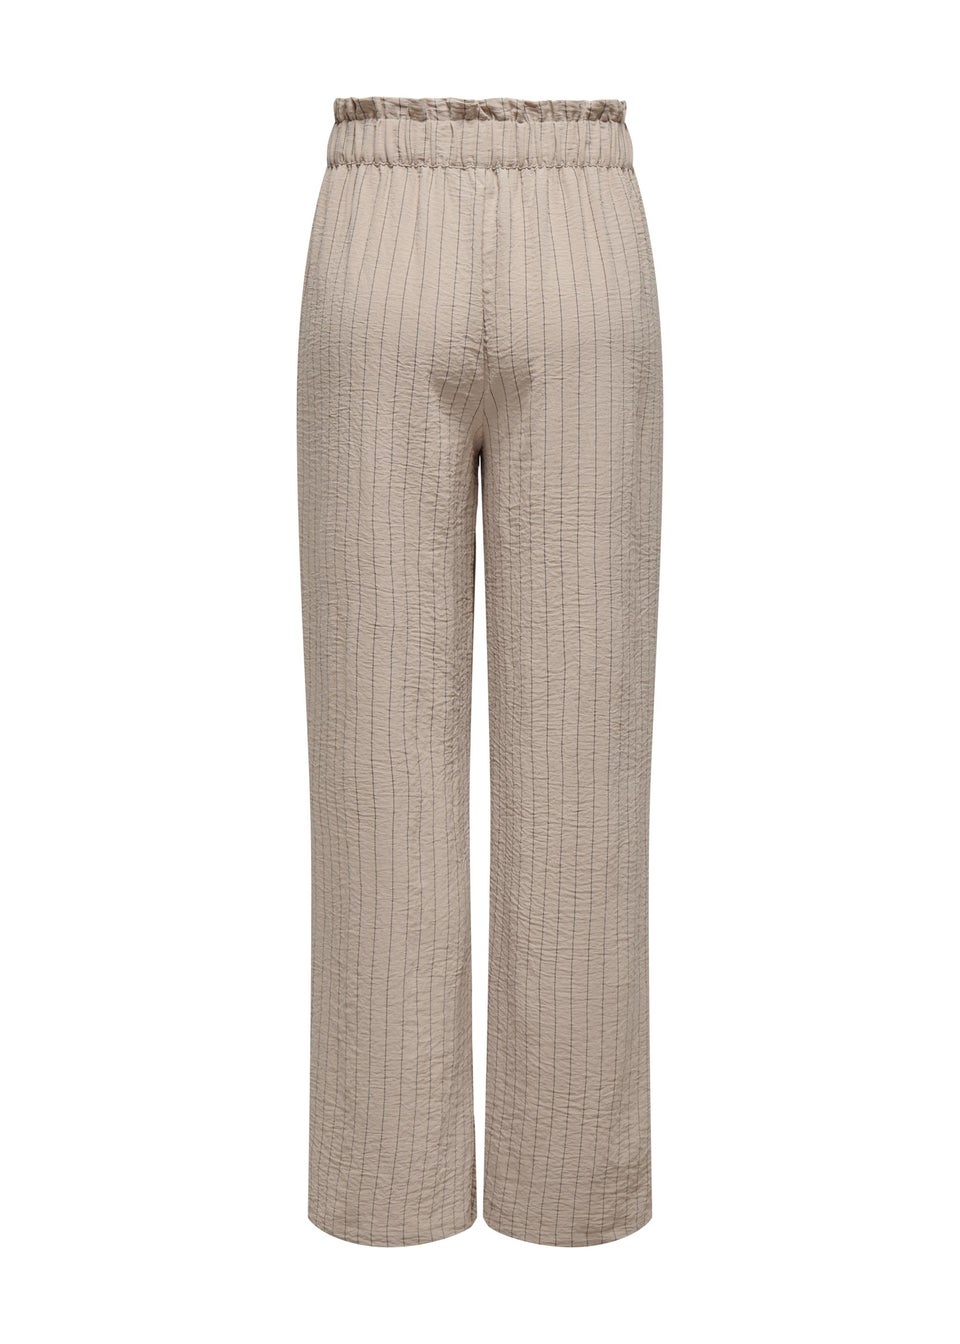 JDY Beige Stripe Print Trousers